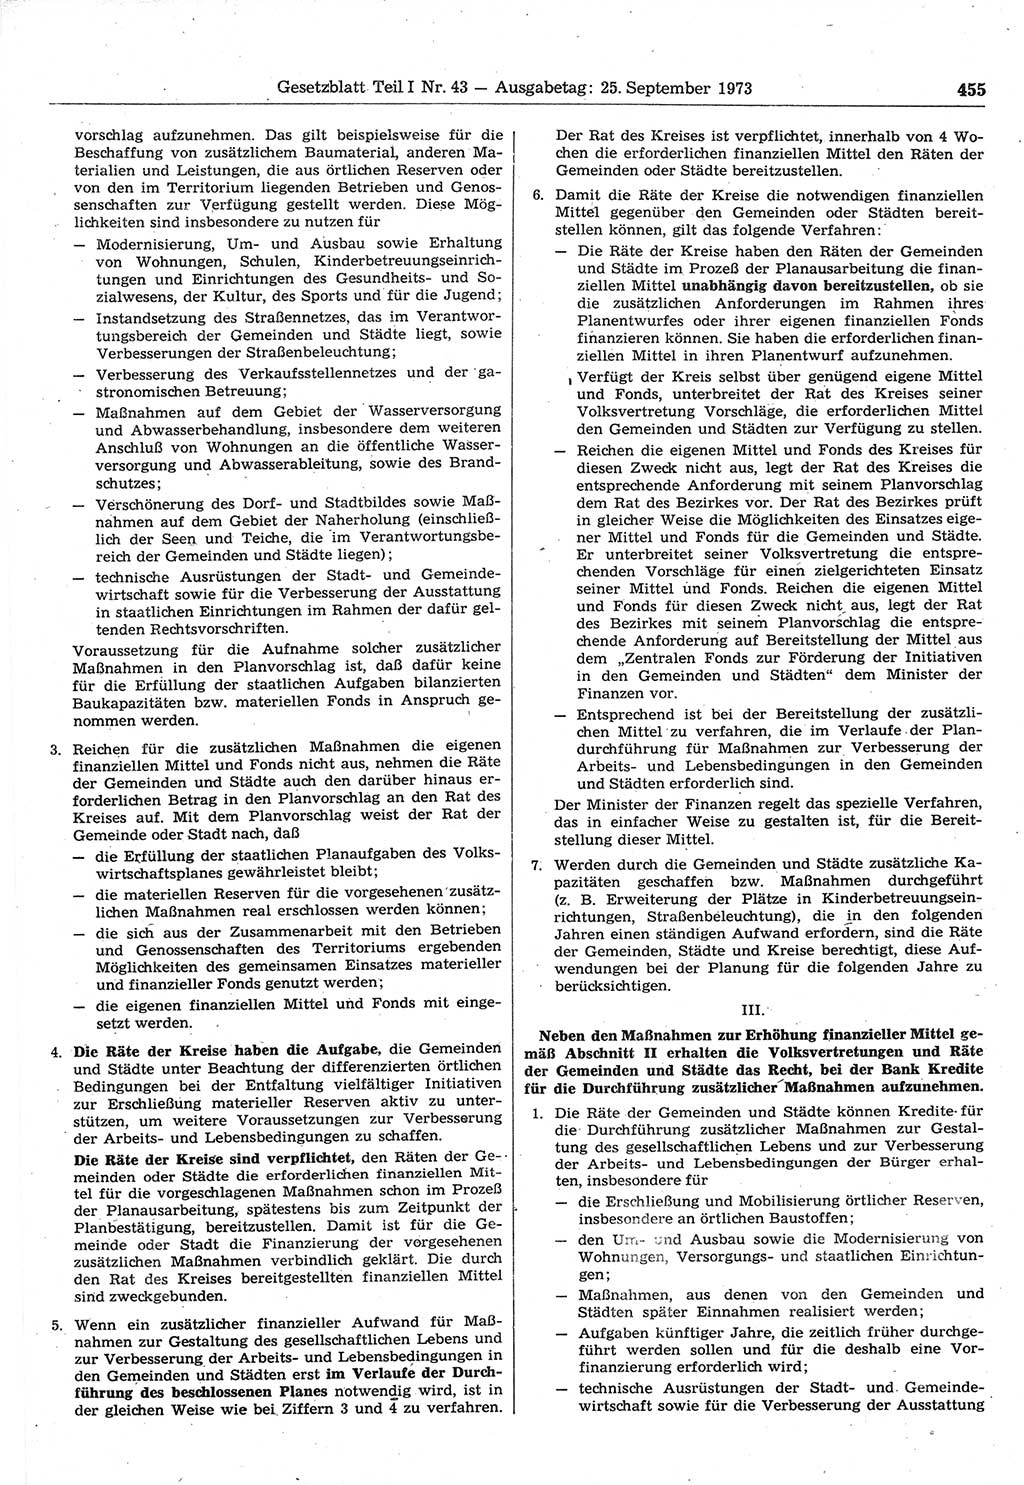 Gesetzblatt (GBl.) der Deutschen Demokratischen Republik (DDR) Teil Ⅰ 1973, Seite 455 (GBl. DDR Ⅰ 1973, S. 455)